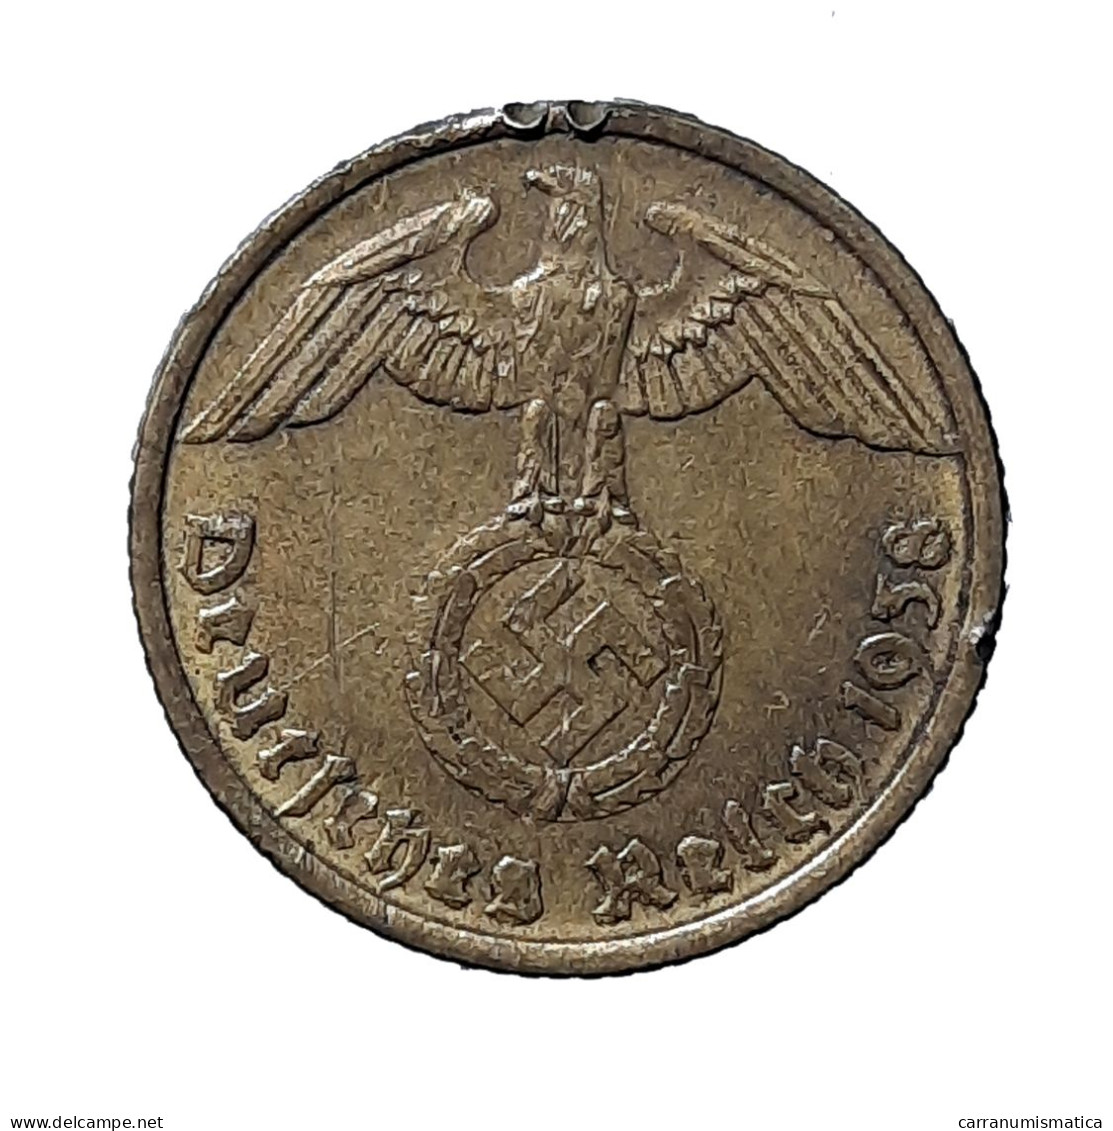 [NC] GERMANIA - 10 REICHSPFENNIG 1938 A (nc250a) - 10 Reichspfennig